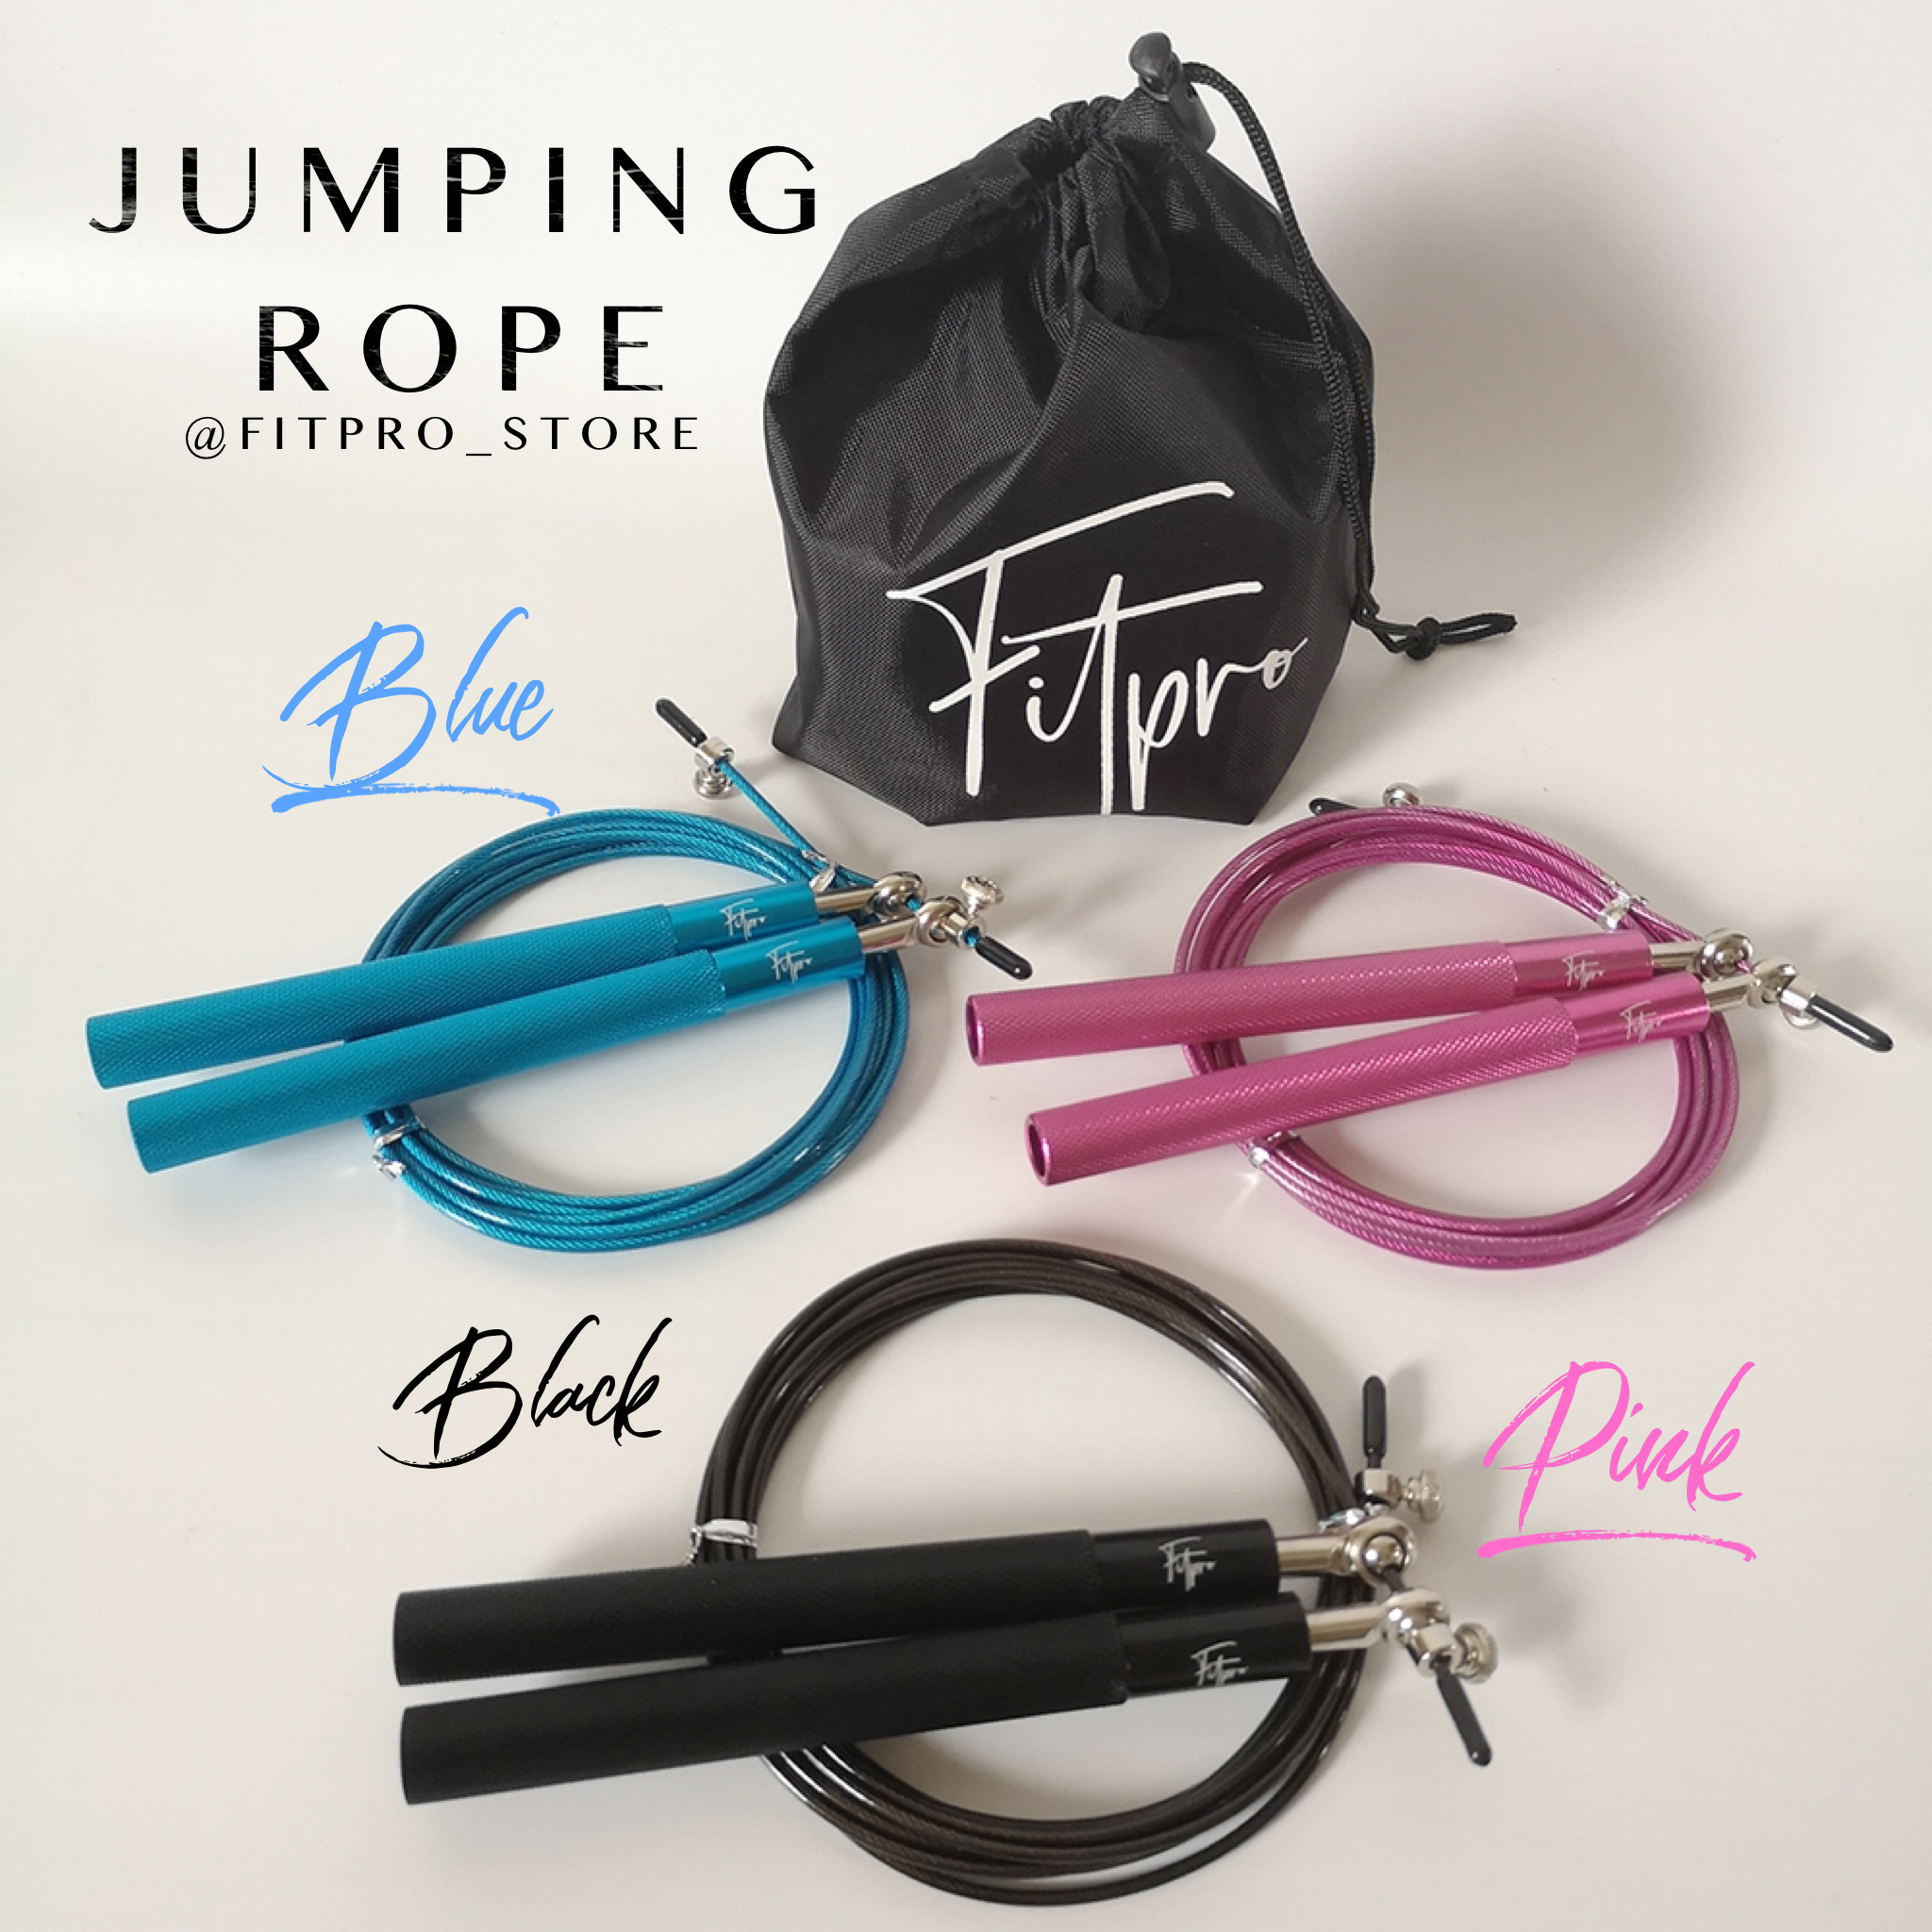 เชือกกระโดดความเร็วสูง Fitpro Speed Jump Rope  สายลวดสลิงหุ้มยางอย่างดีคุณภาพสูง สายปรับความยาวได้ กระโดดง่ายไม่สะดุด แถมฟรี!! ถุงผ้าพกพา